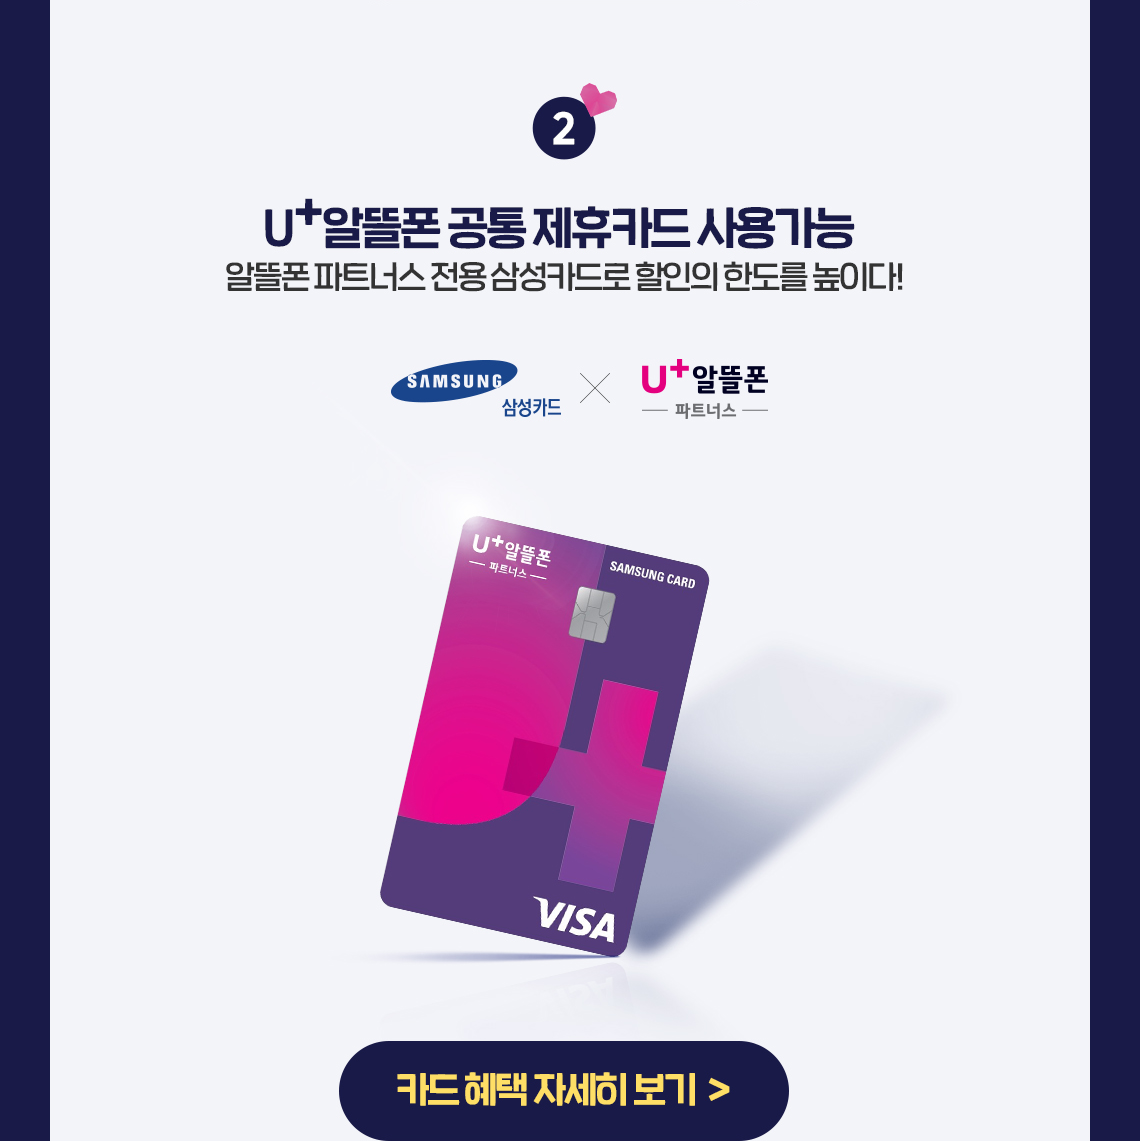 U+알뜰폰 공통 제휴카드 사용가능. 알뜰폰 파트너스 전용 삼성카드로 할인의 한도를 높이다!